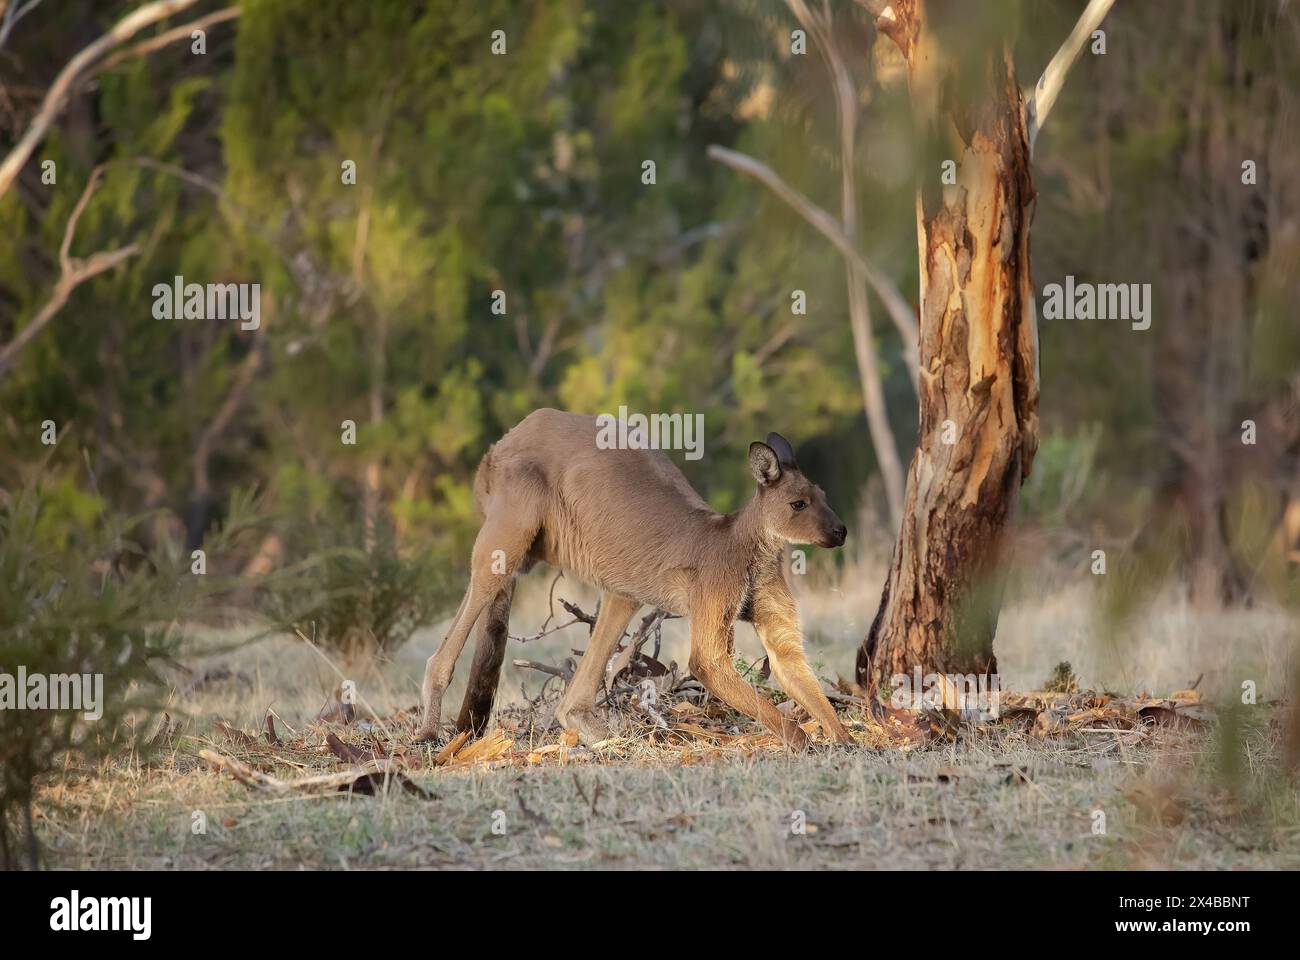 Un gros kangourou sauvage pèle sous les arbres Banque D'Images